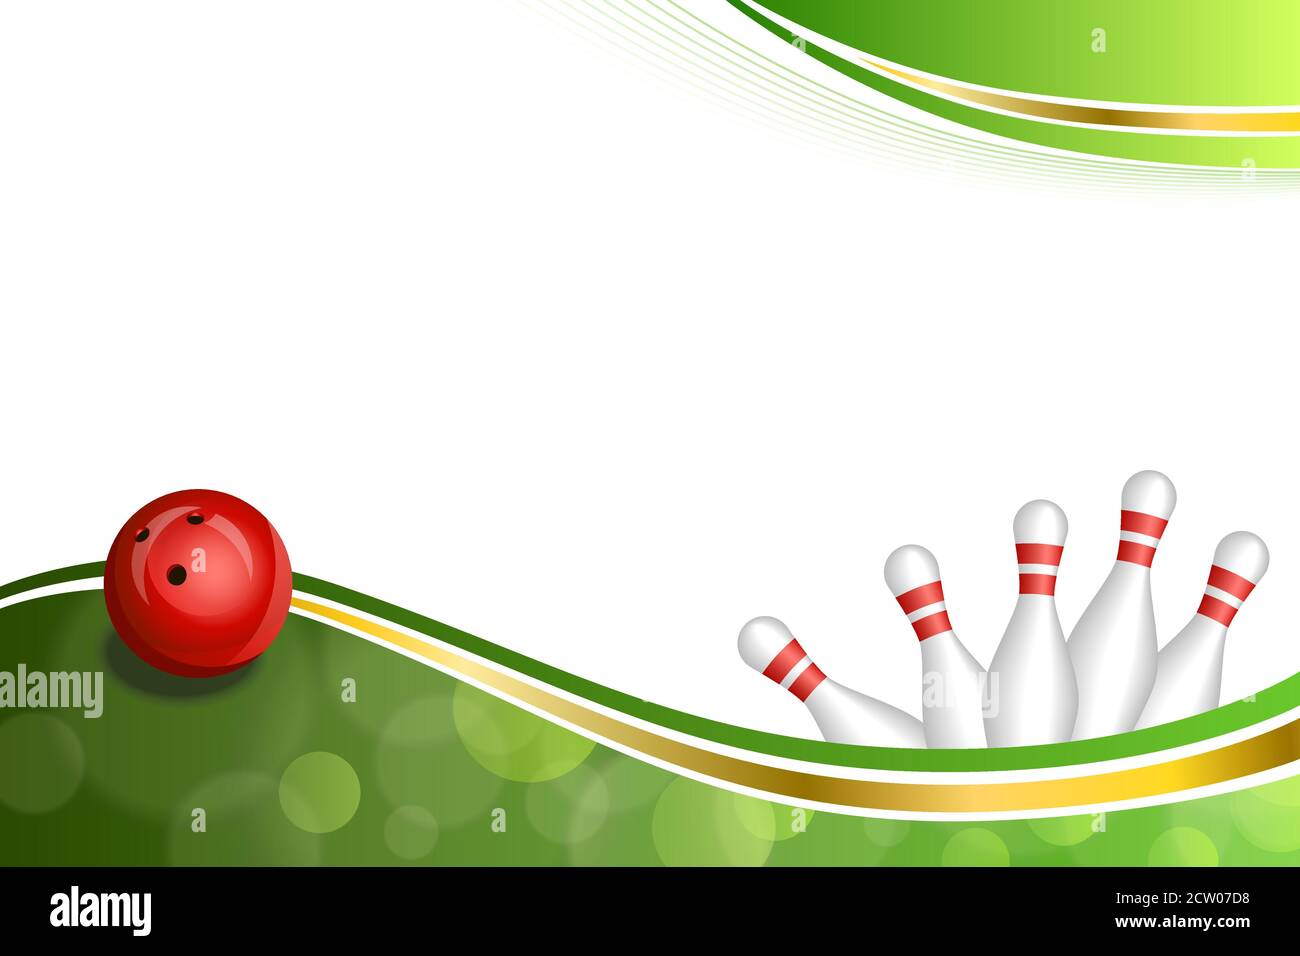 Hintergrund abstrakt grün Gold Band Bowling roten Ball Illustration Vektor Stock Vektor